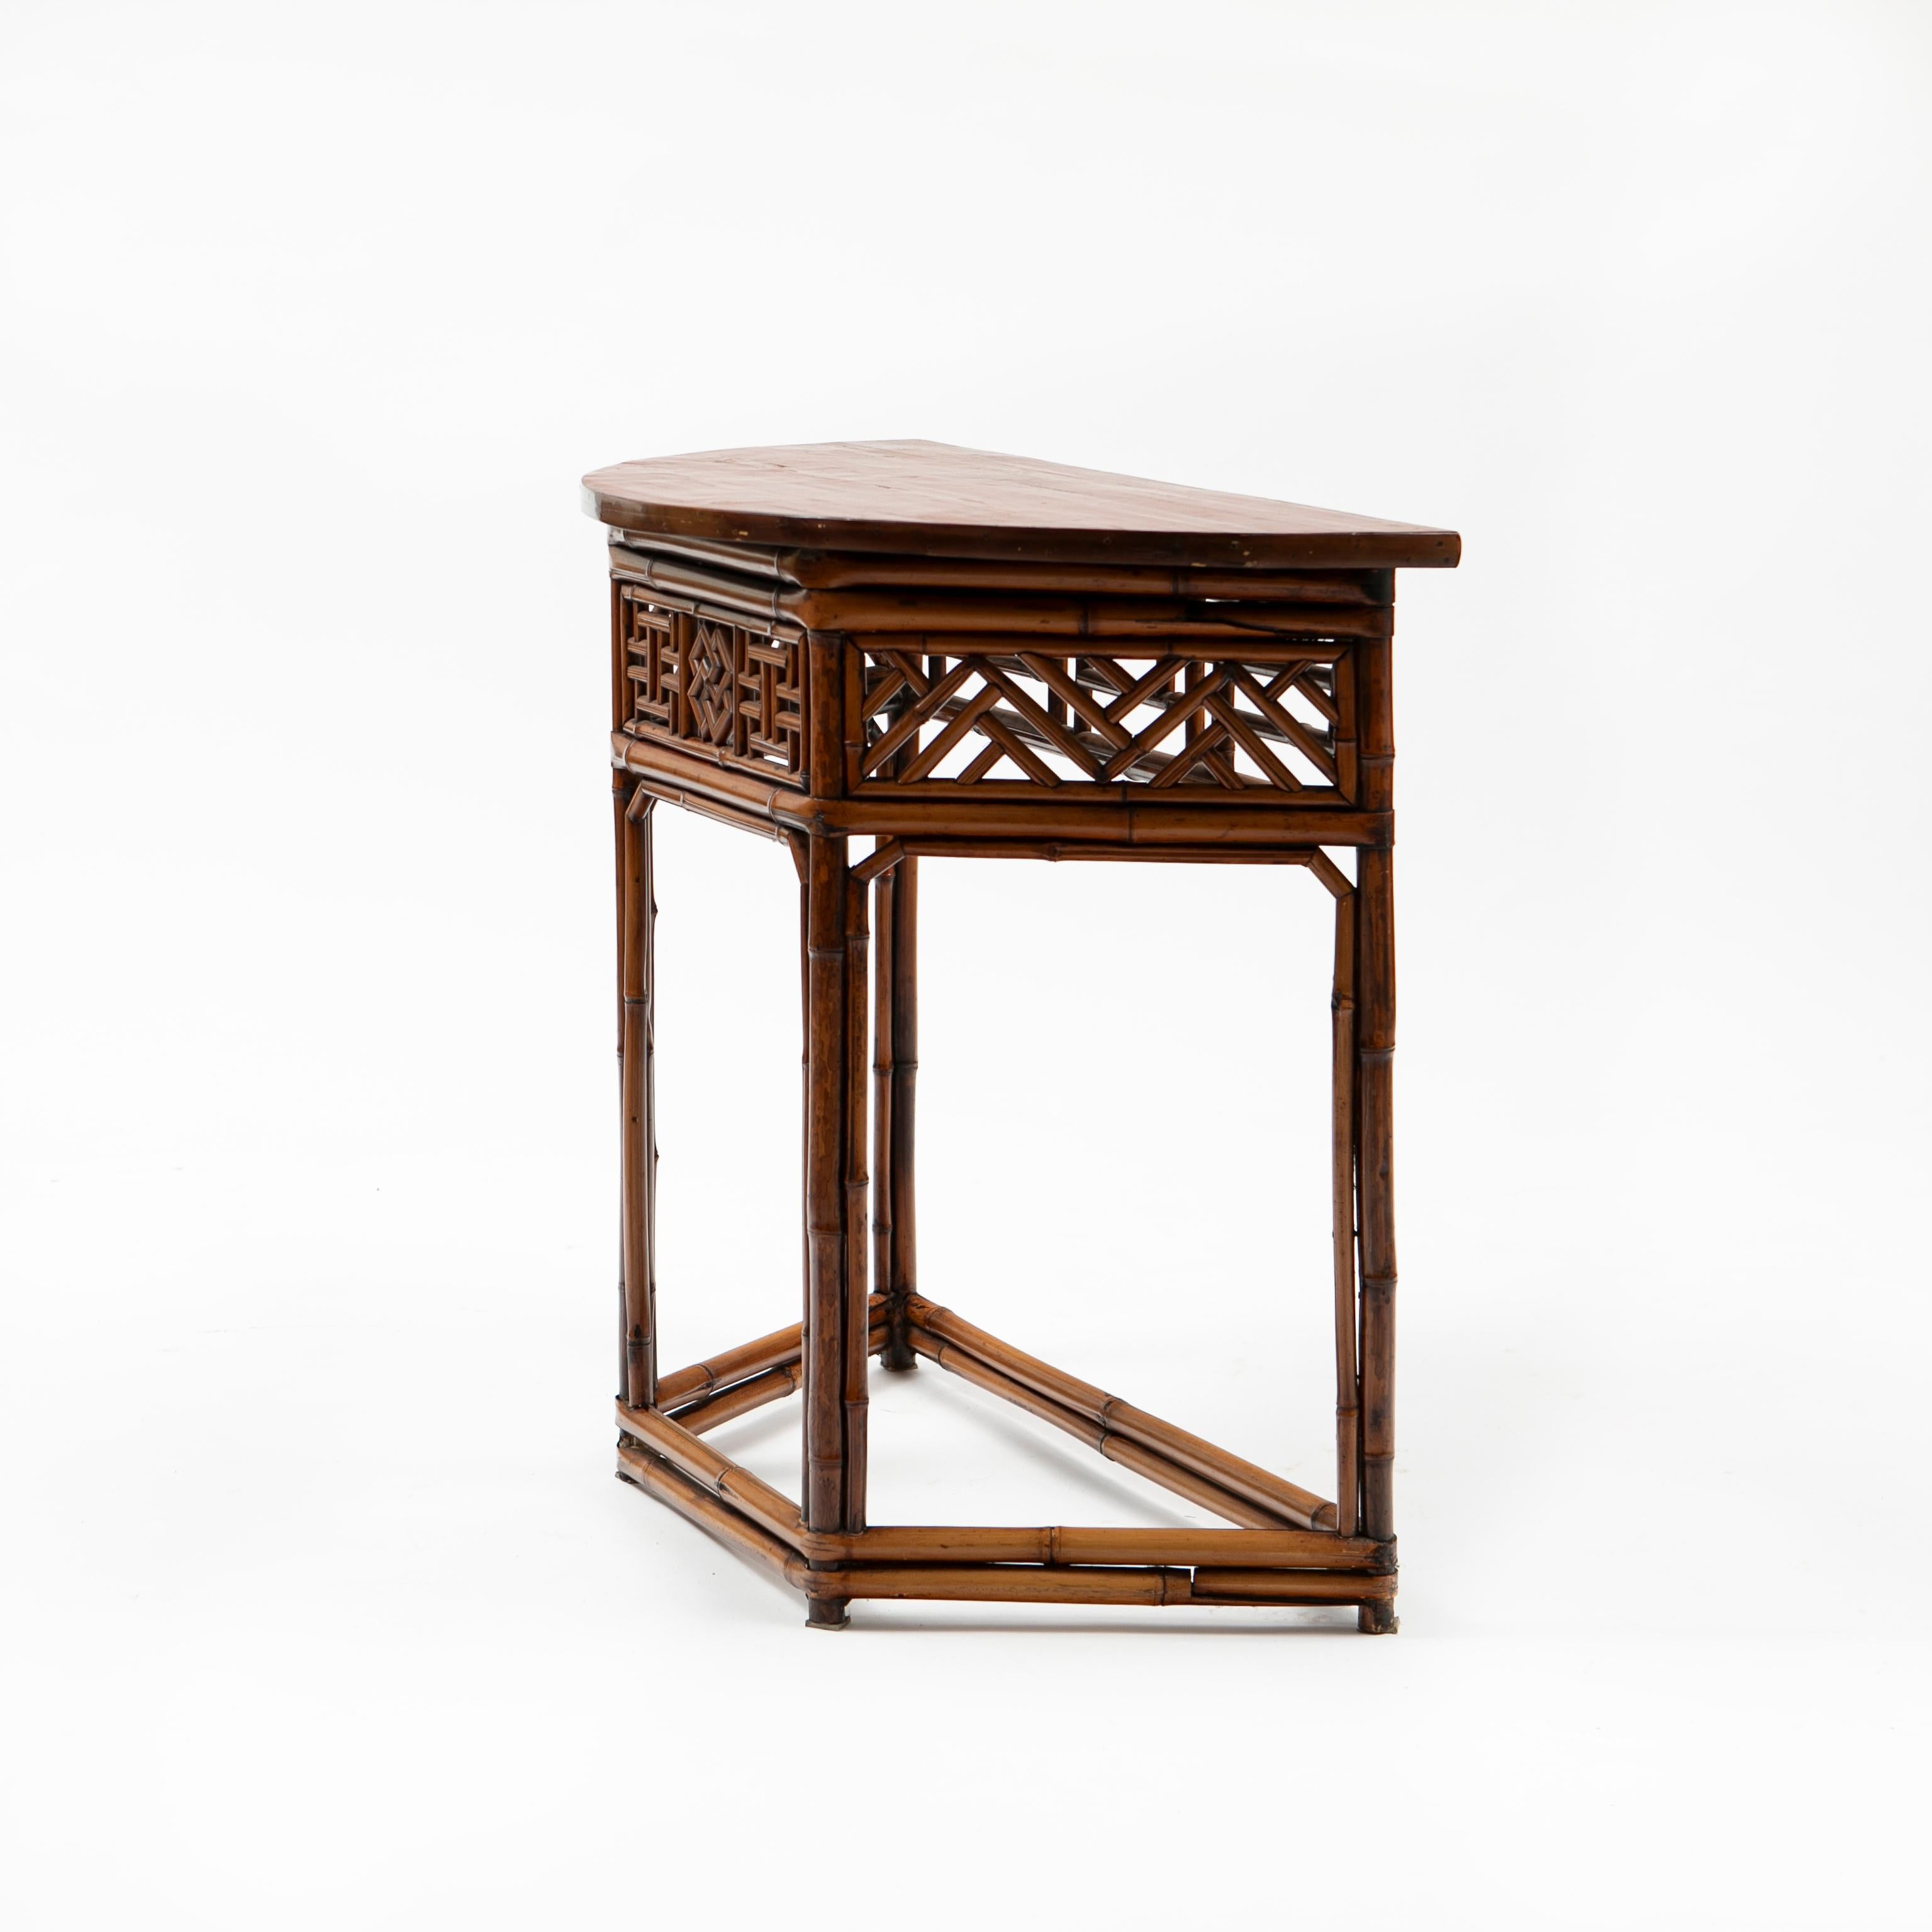 Elegante table demilune chinoise en bambou avec un design géométrique ajouré sur 4 côtés et un plateau en bois laqué rouge en forme de demilune.
État d'origine avec une patine naturelle liée à l'âge, rehaussée d'une finition laquée transparente.